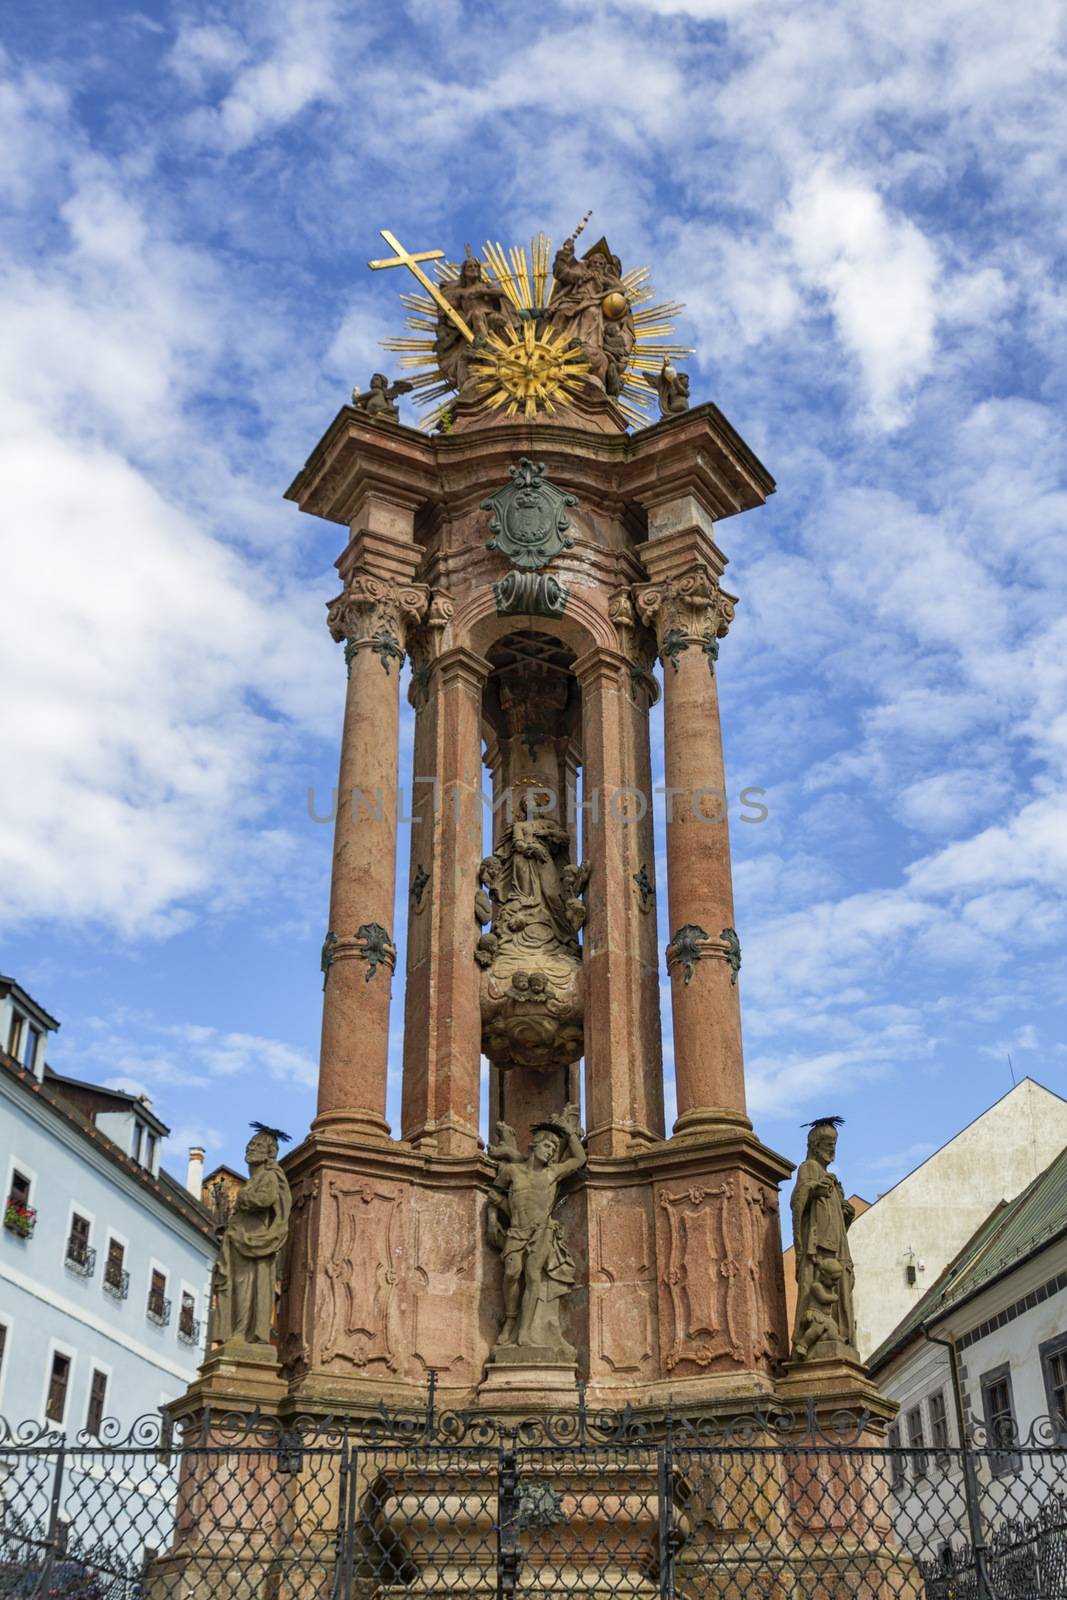 Monumental plague column in Banska Stiavnica, Slovakia by Elenaphotos21